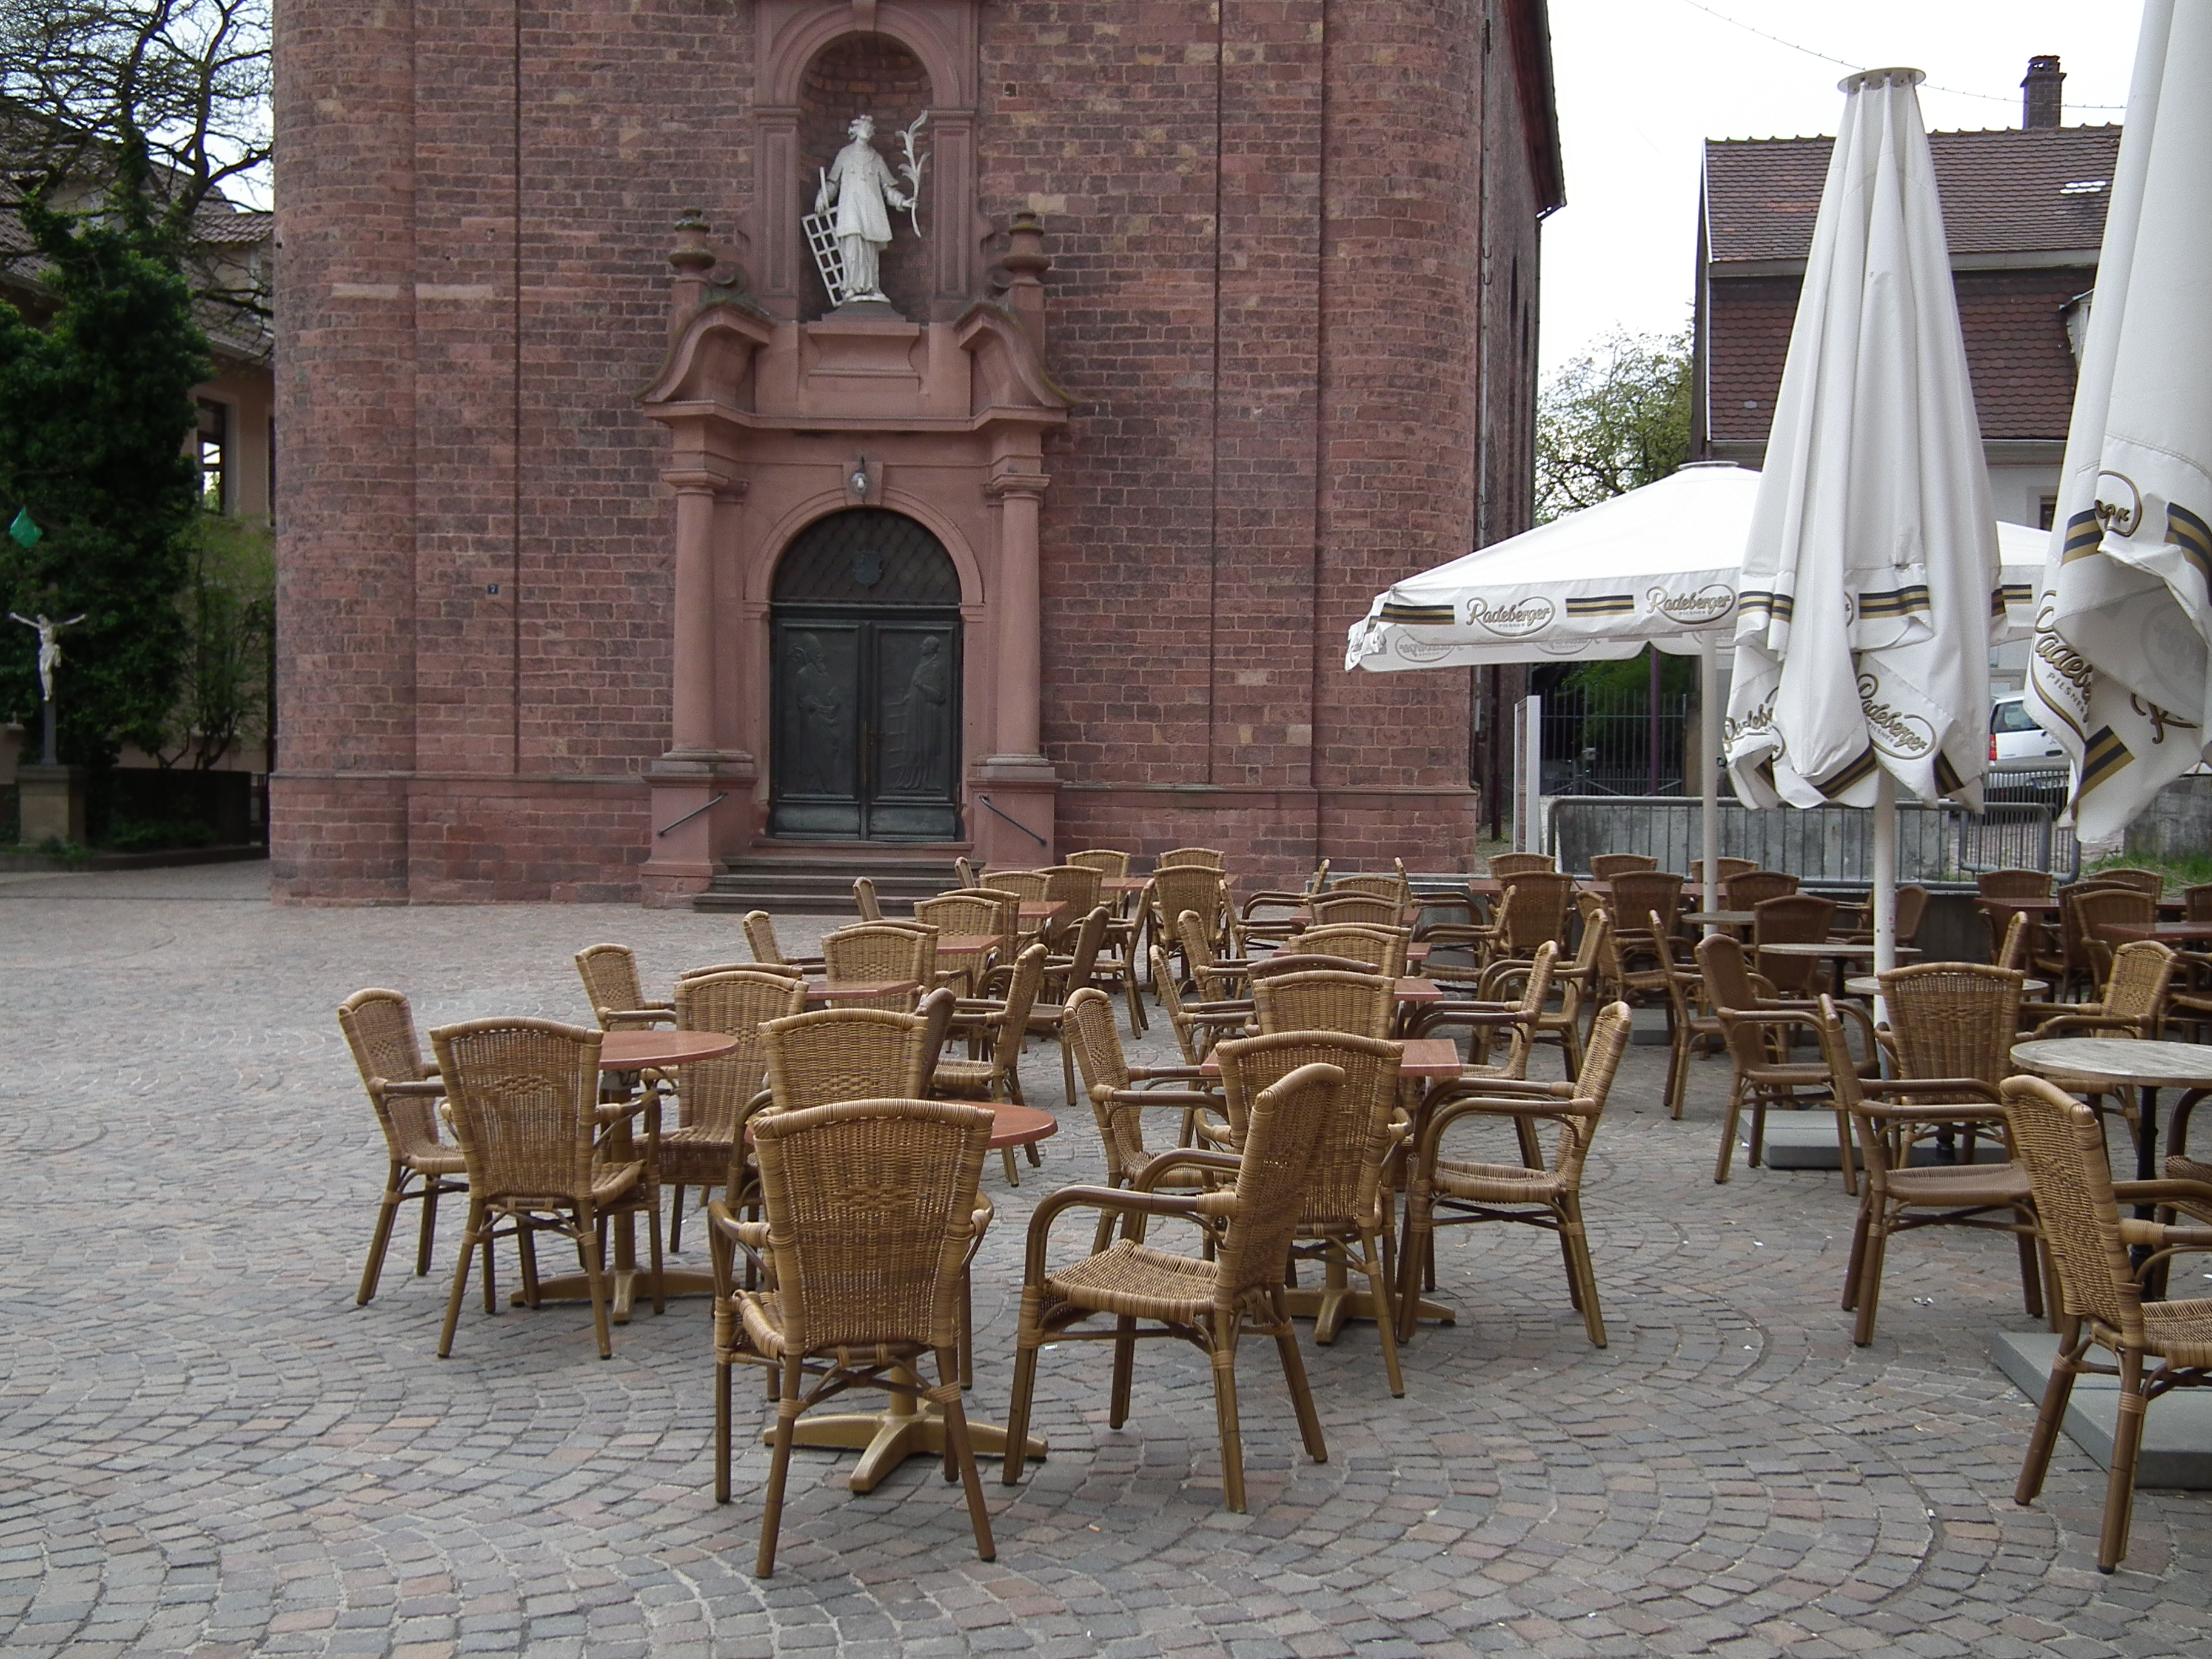 Straßencafe vor Laurentius-Kirche in Wiesloch